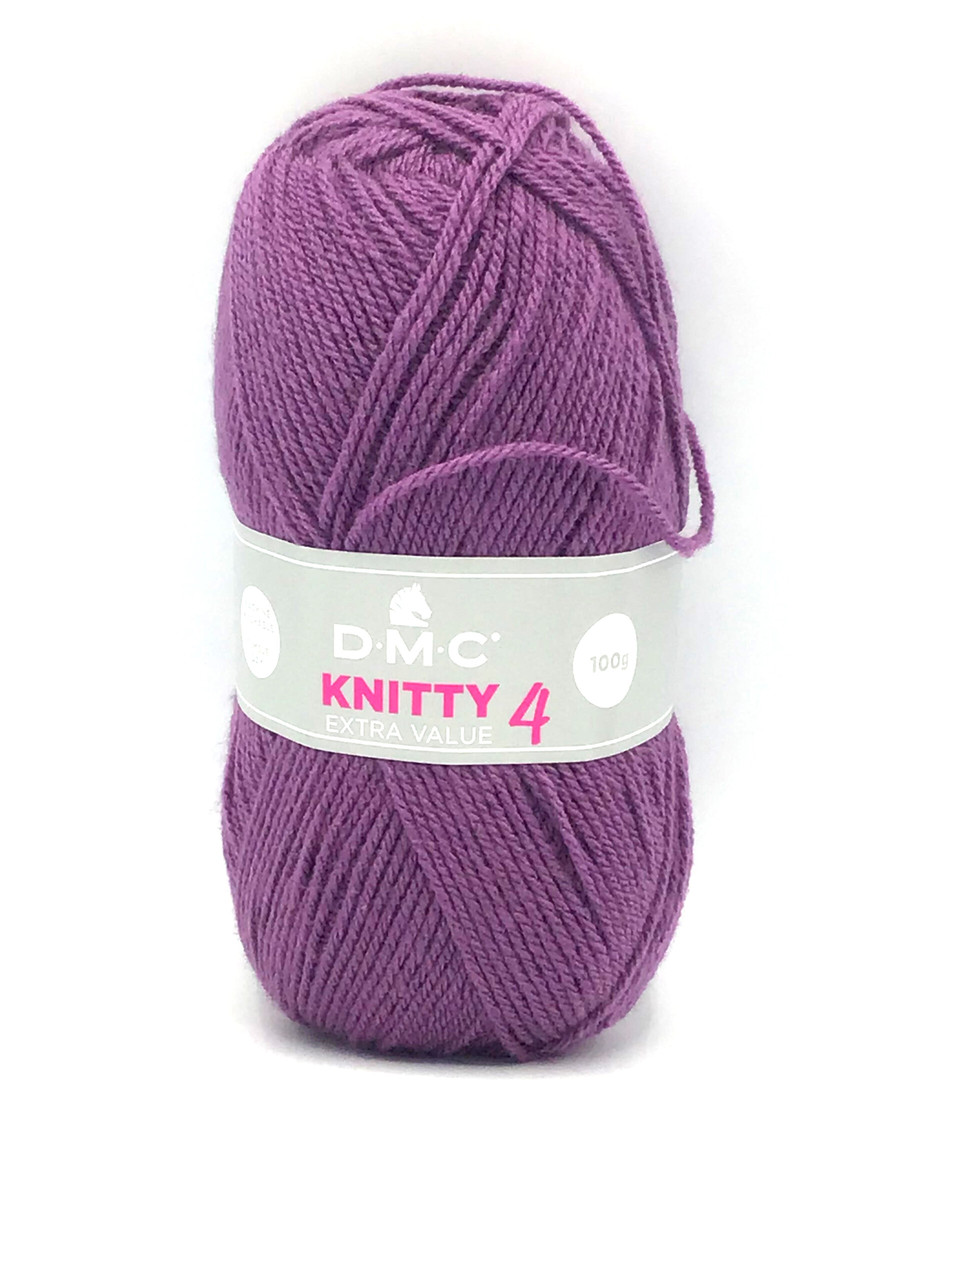 Пряжа Knitty 4, цвет 701